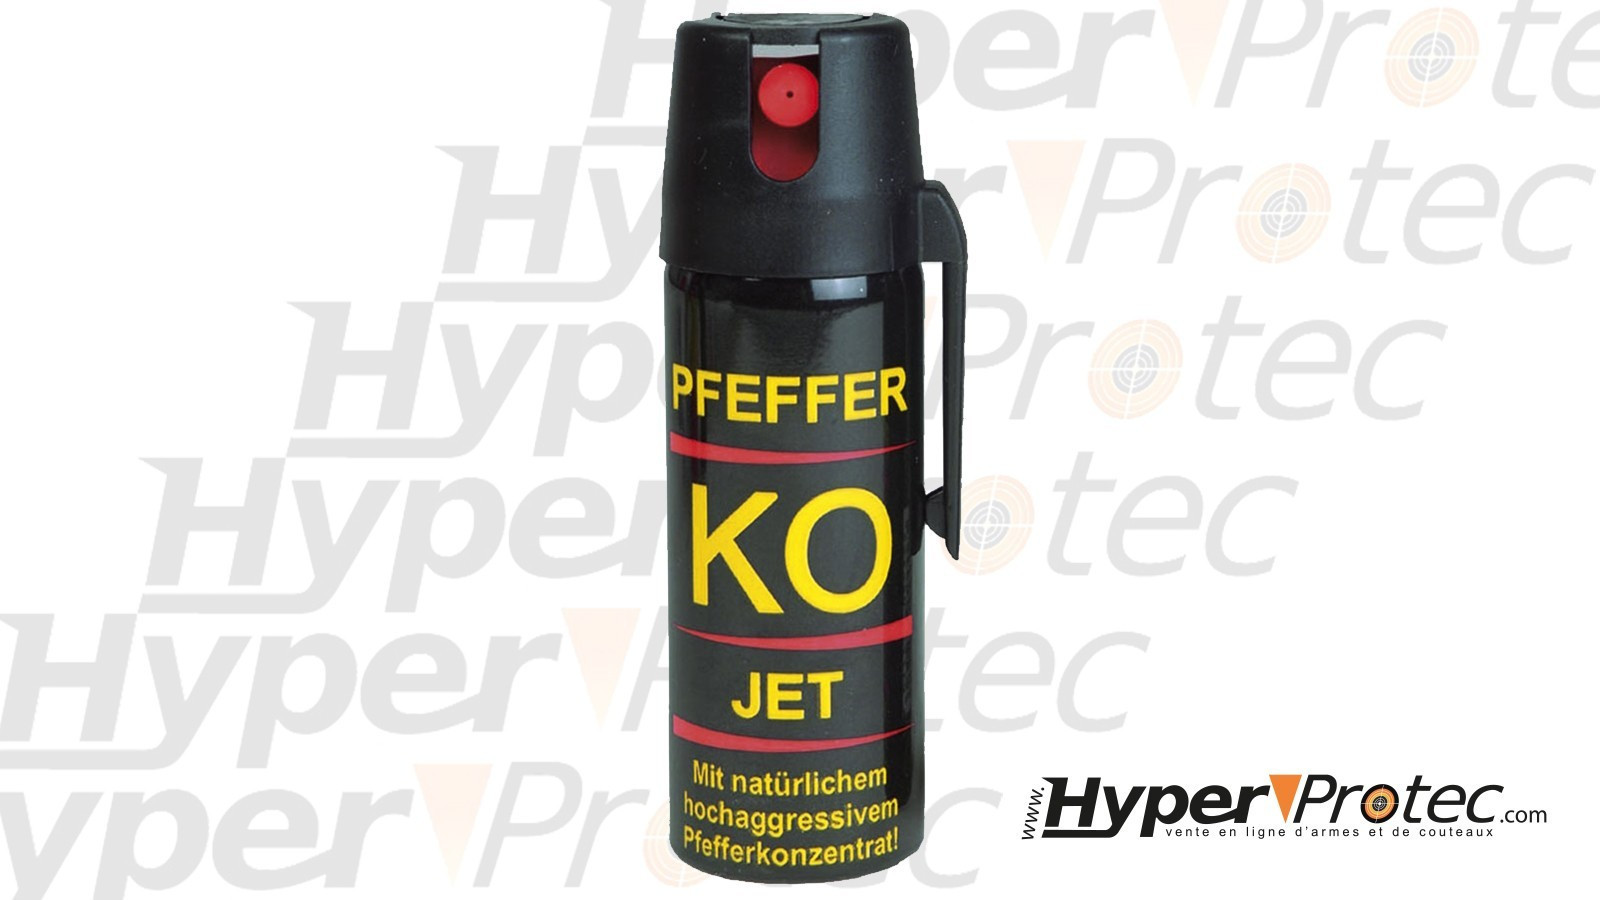 Perfecta Spray au poivre 15% OC / Capacité : 50ml (Pfefferspray 15% OC ) -  Bombe lacrymogène - Boutique sécurité - Equipements - boutique en ligne 